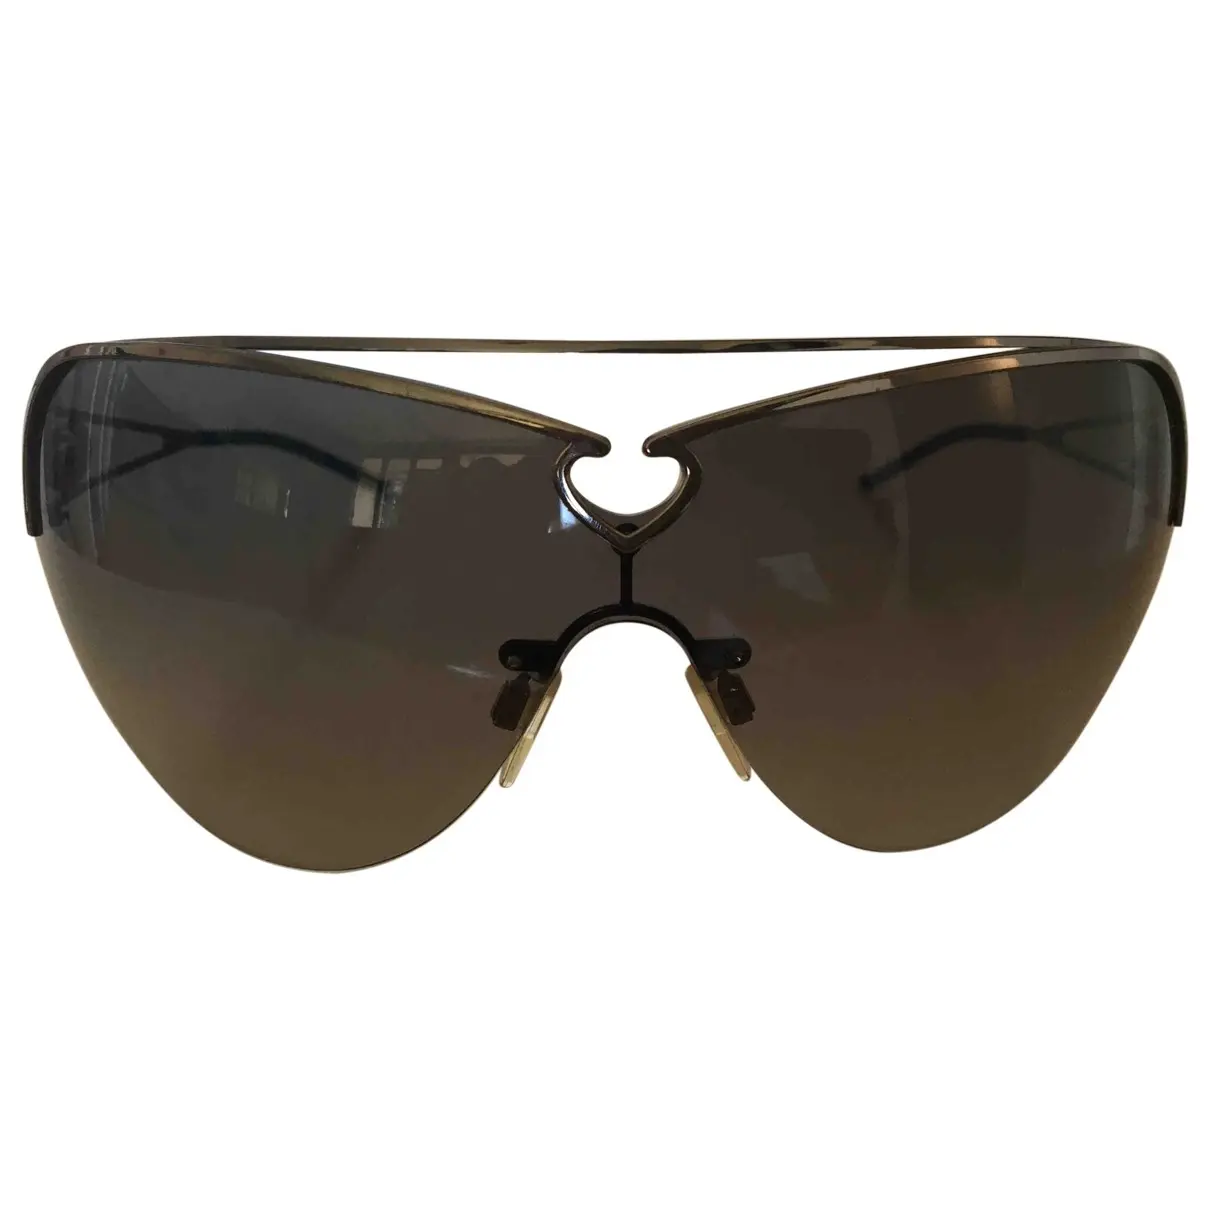 Oversized sunglasses Just Cavalli - Vintage